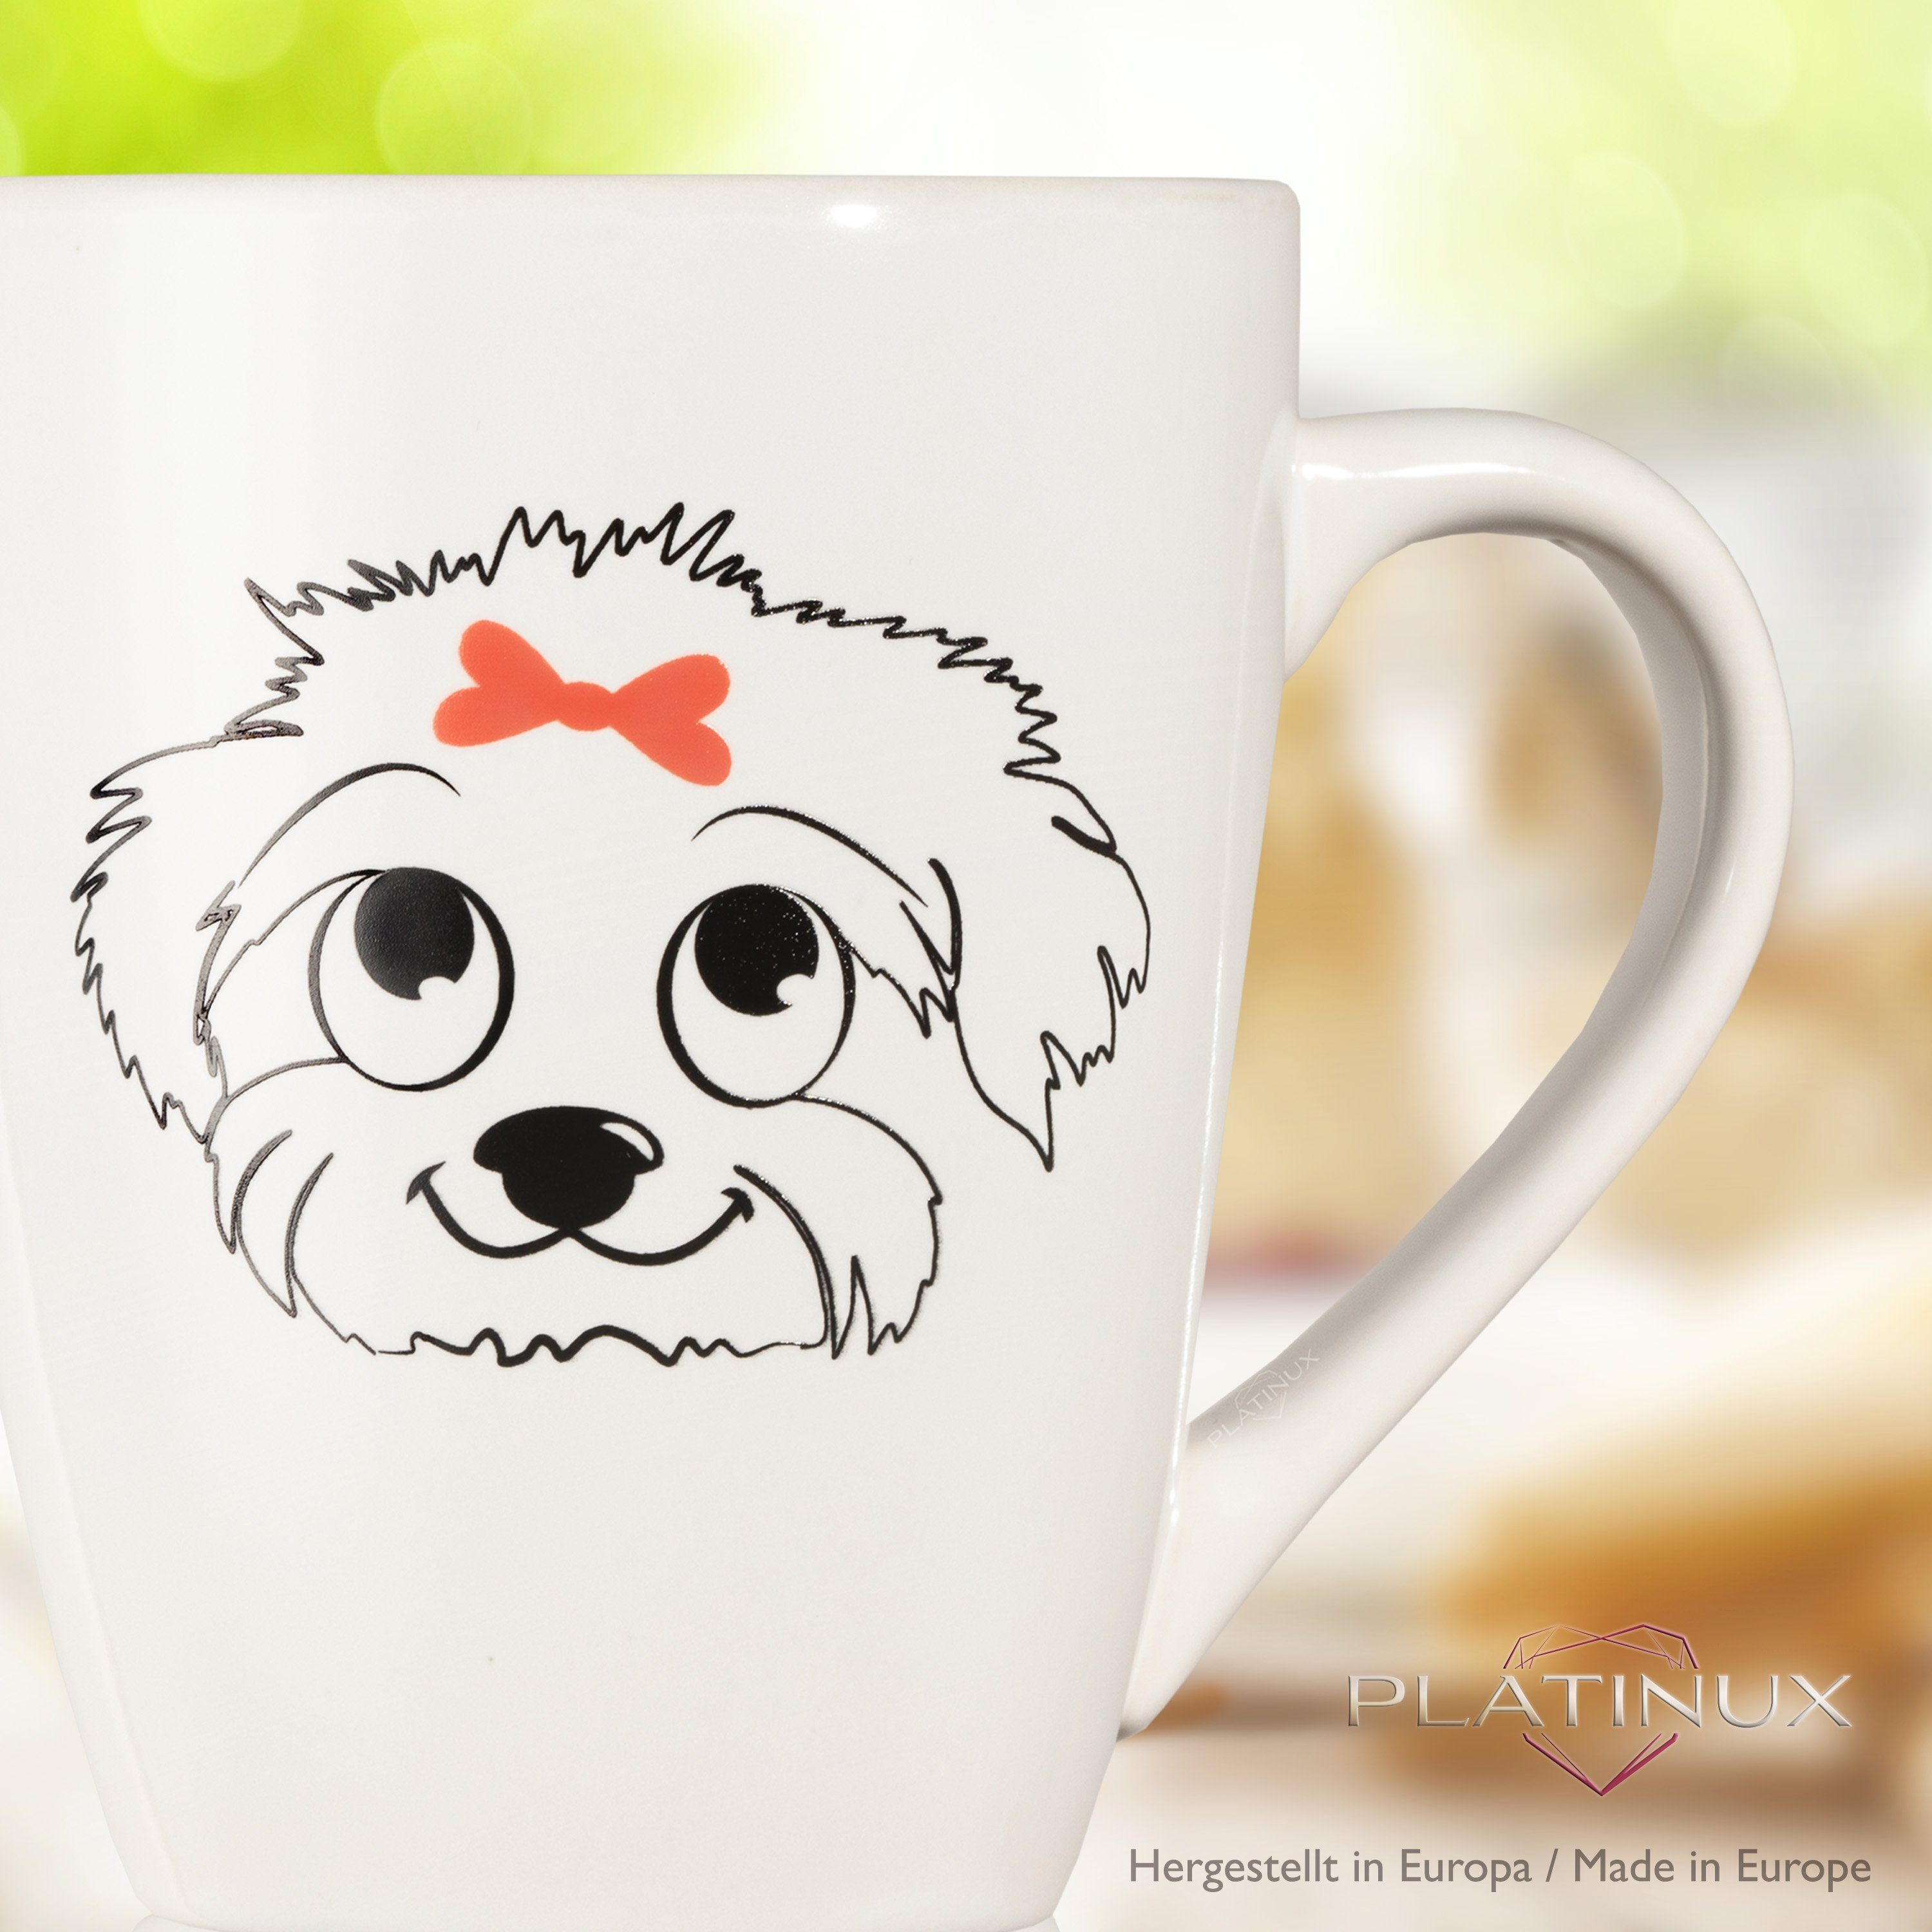 Tasse Teetasse 250ml Keramik, Teebecher mit Kaffeetasse Keramik Kaffeebecher Griff PLATINUX mit Hunde "Susi", Tasse aus Motiv